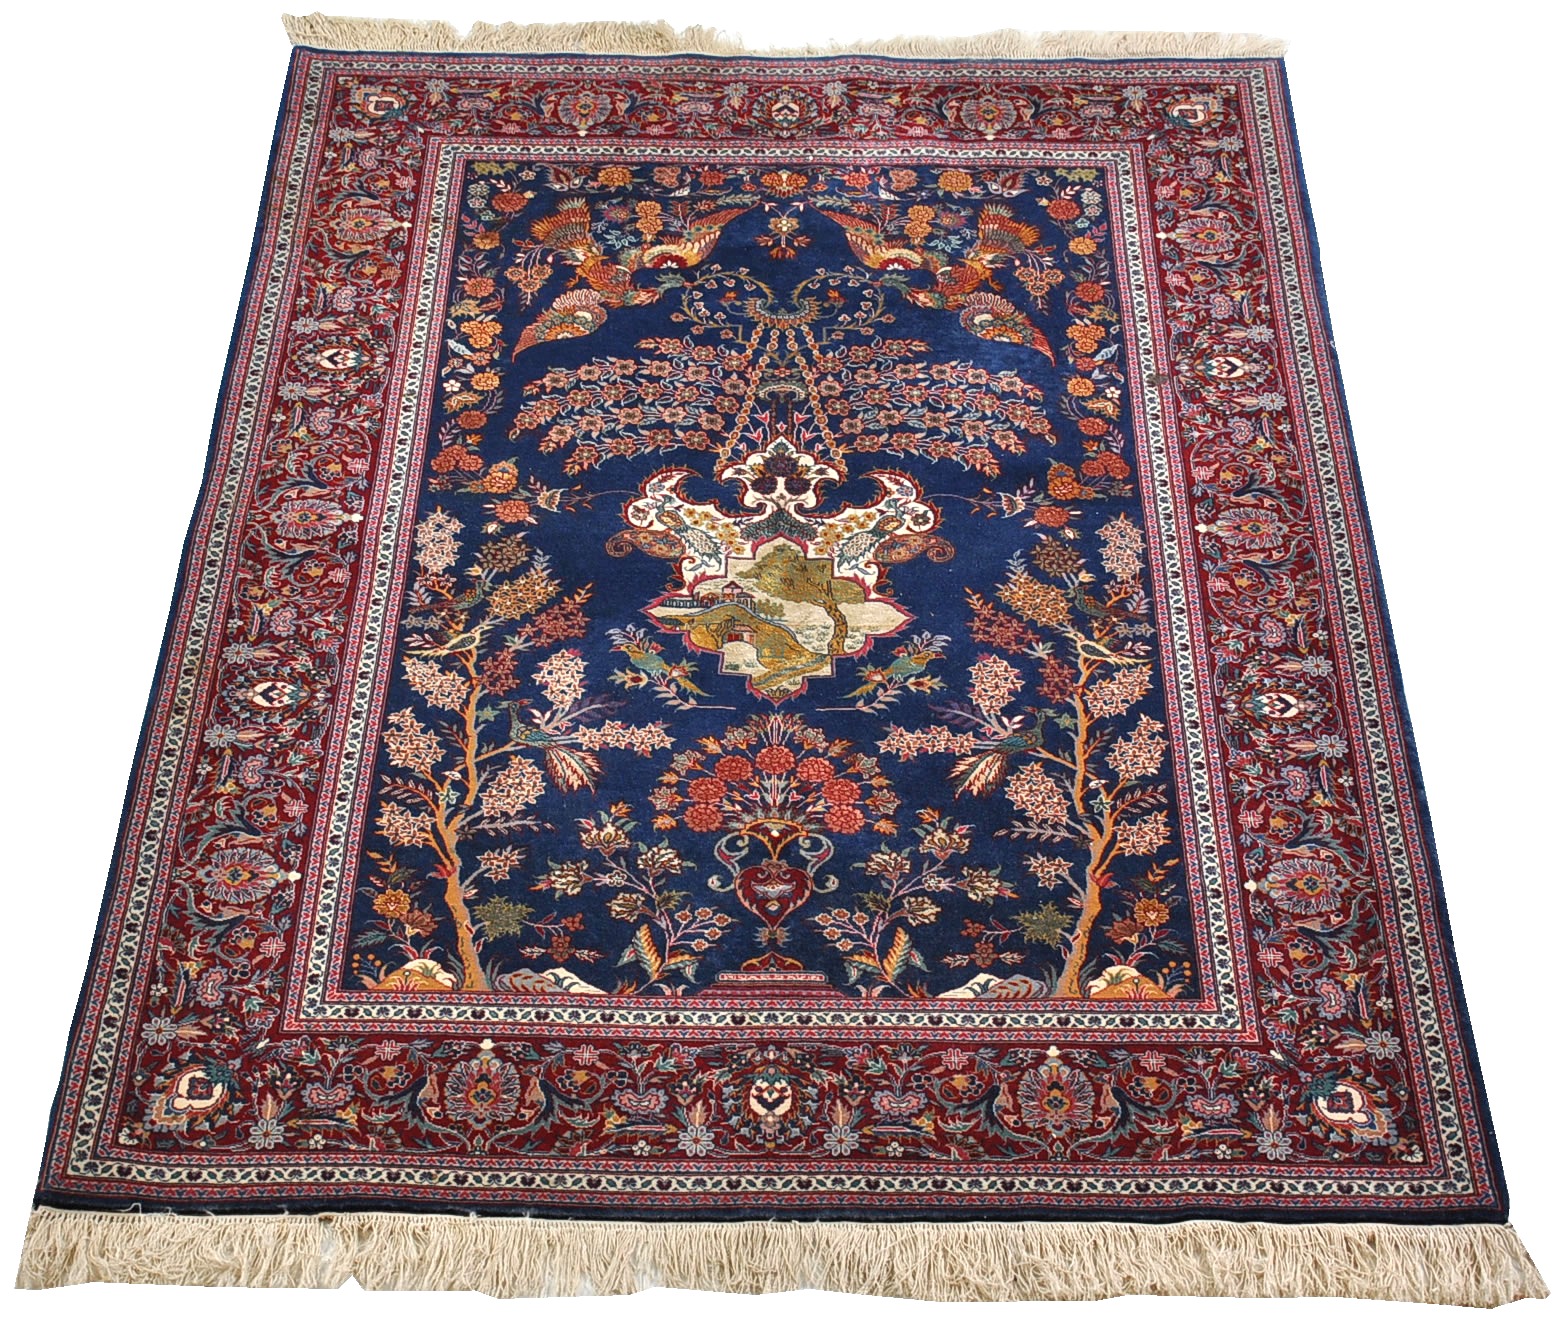 A Kashan Carpet, 03.06.10, Sold: $1173